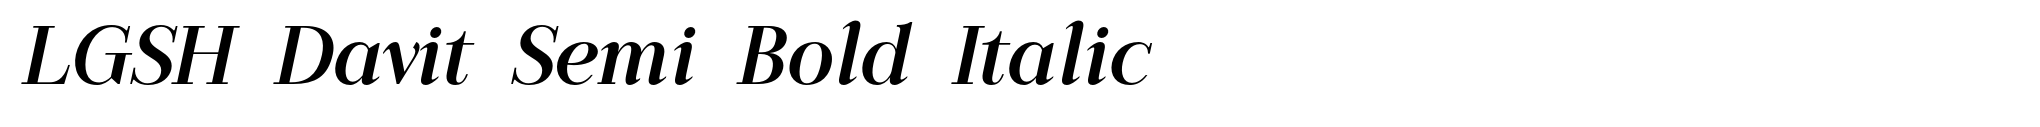 LGSH Davit Semi Bold Italic image